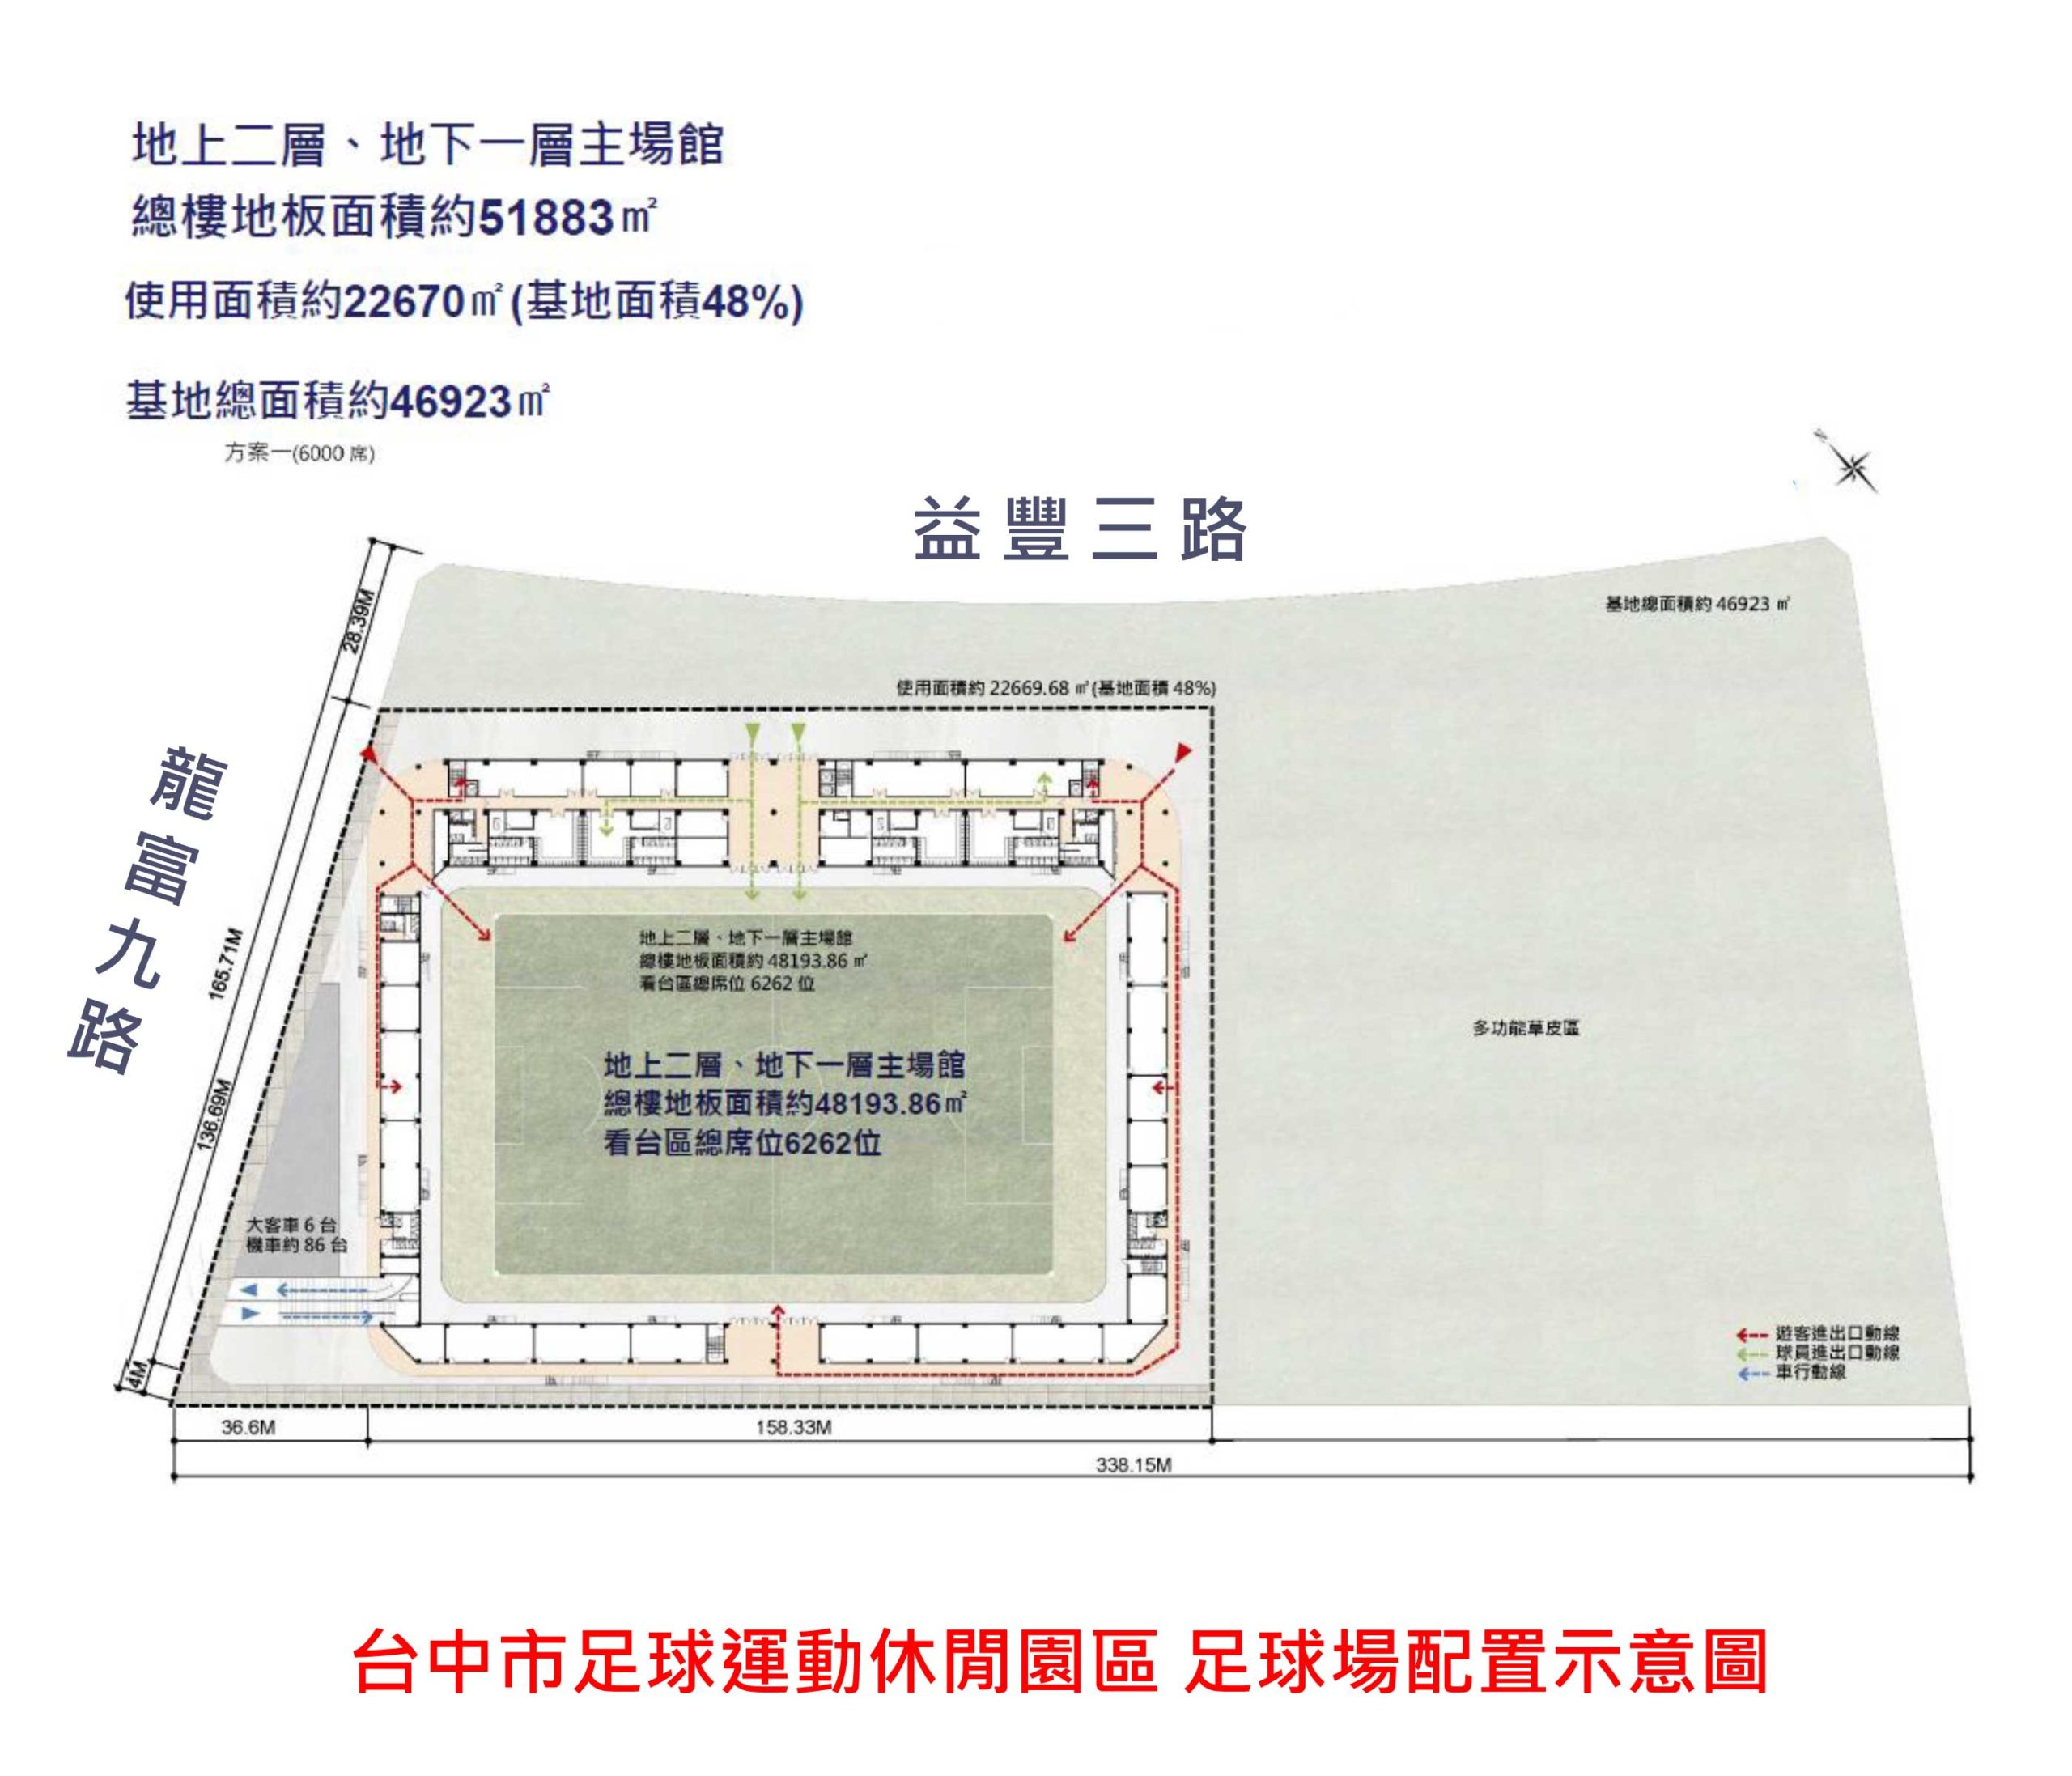 台中市足球運動休閒園區 足球場配置圖